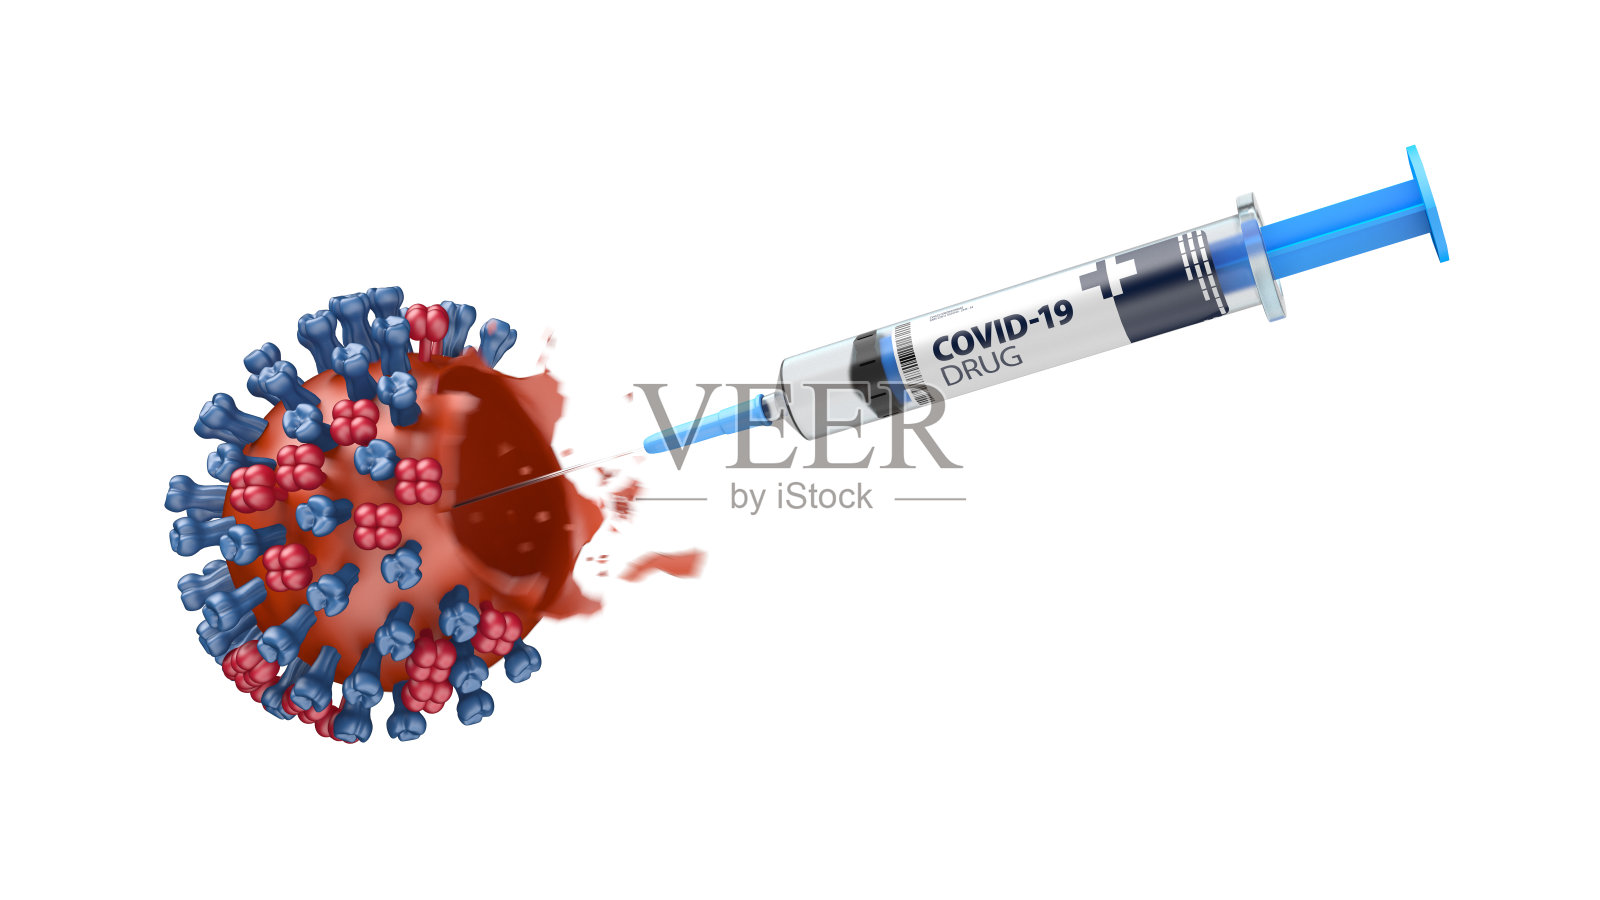 用注射器注射COVID-19药物摧毁冠状病毒。插画图片素材